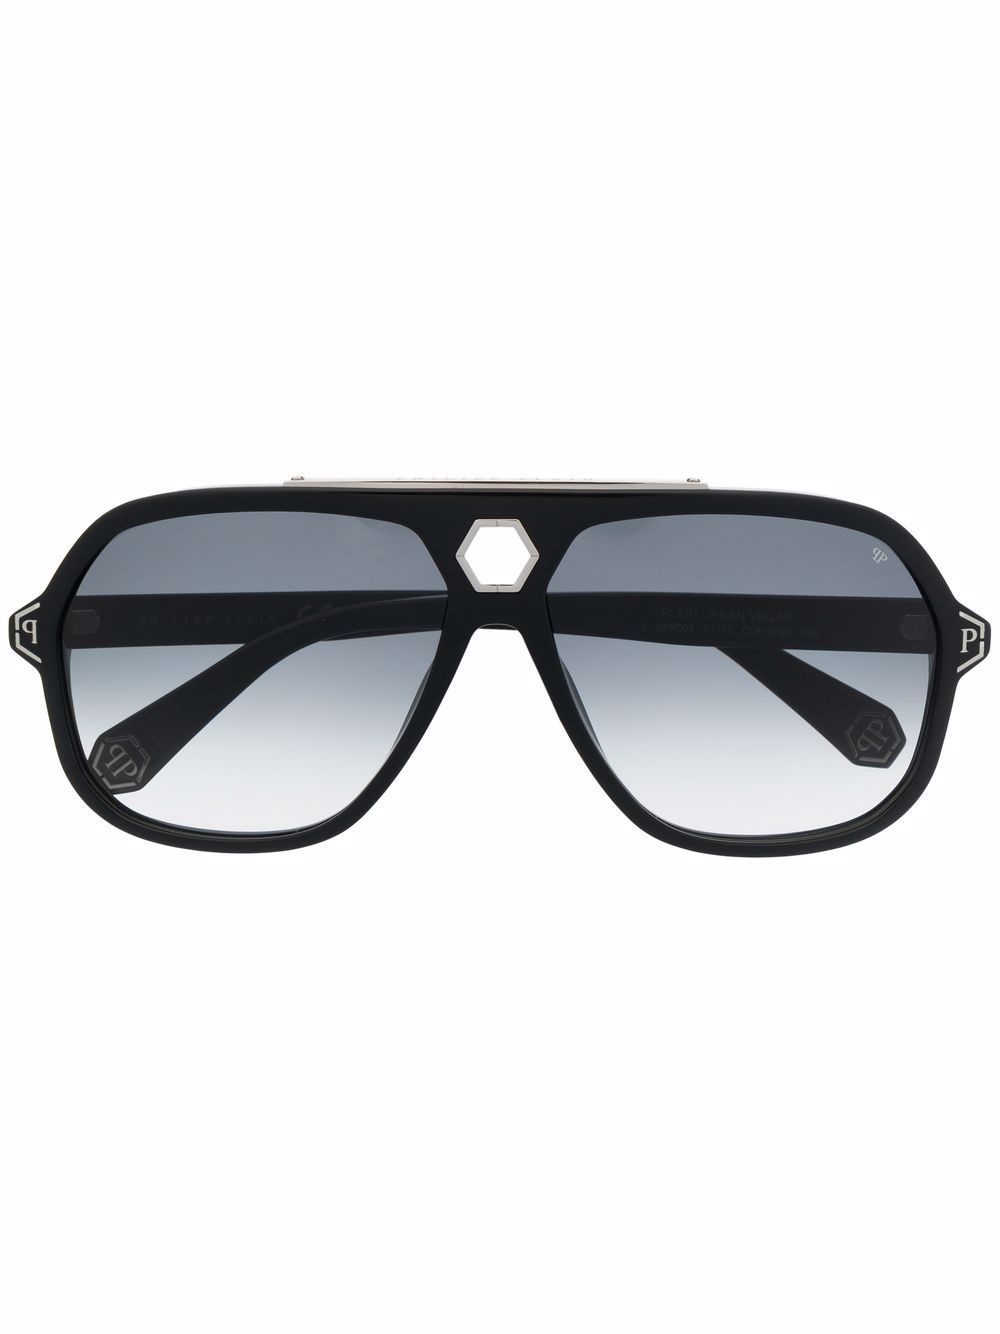 Urban Vega sunglasses - 1